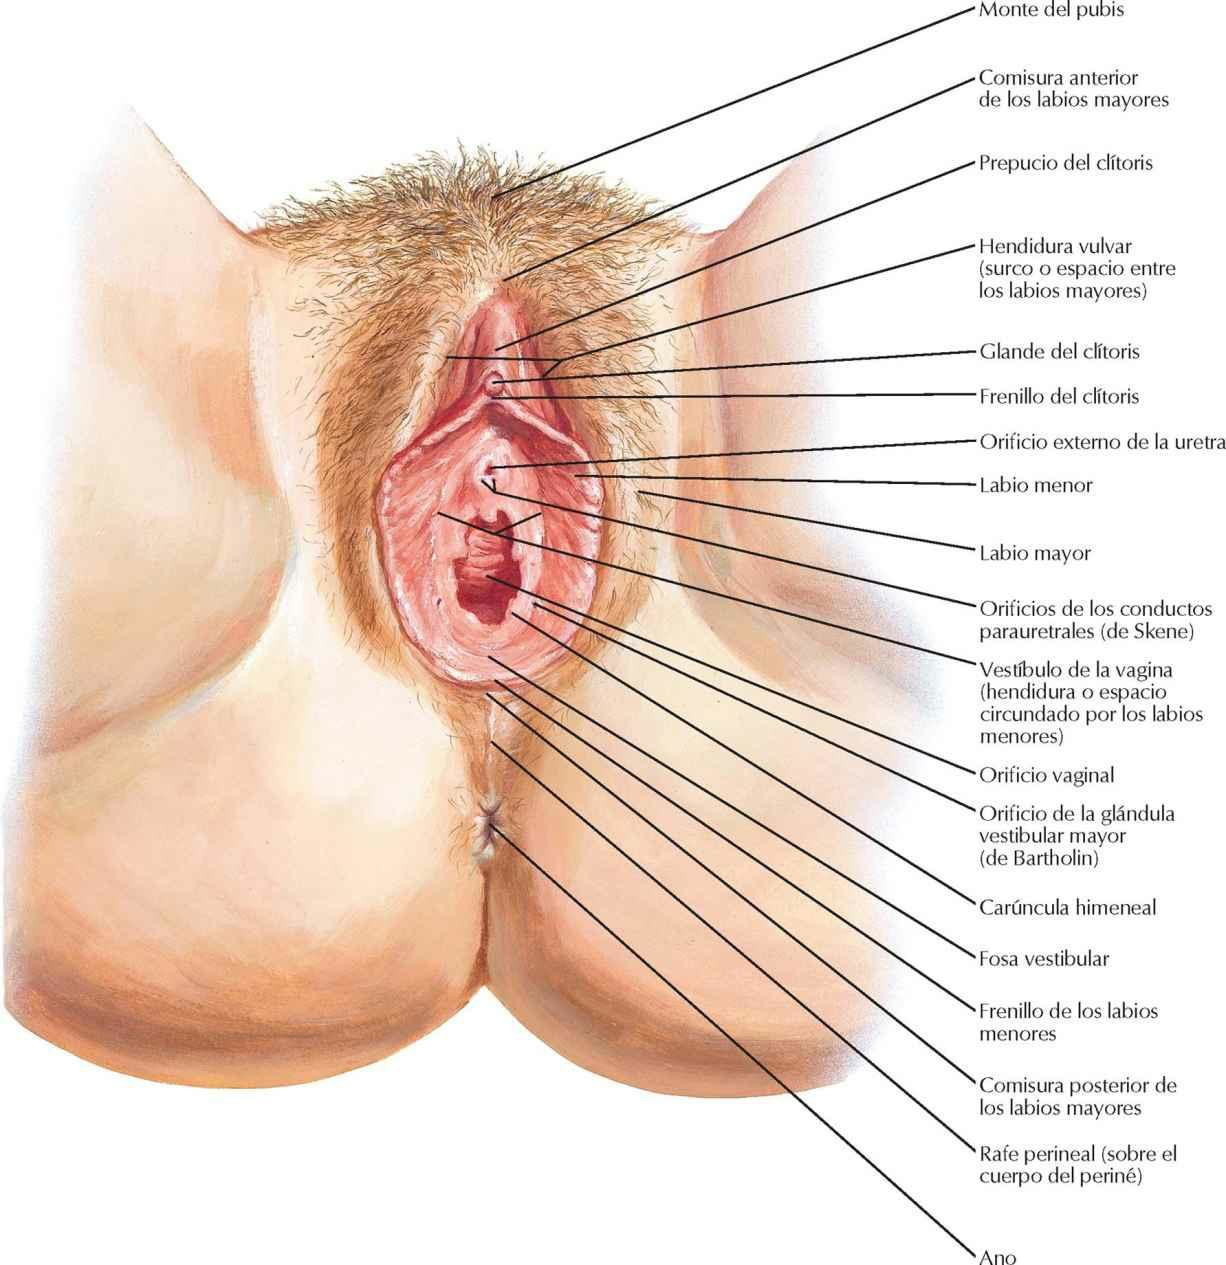 Periné y genitales externos femeninos (vulva)